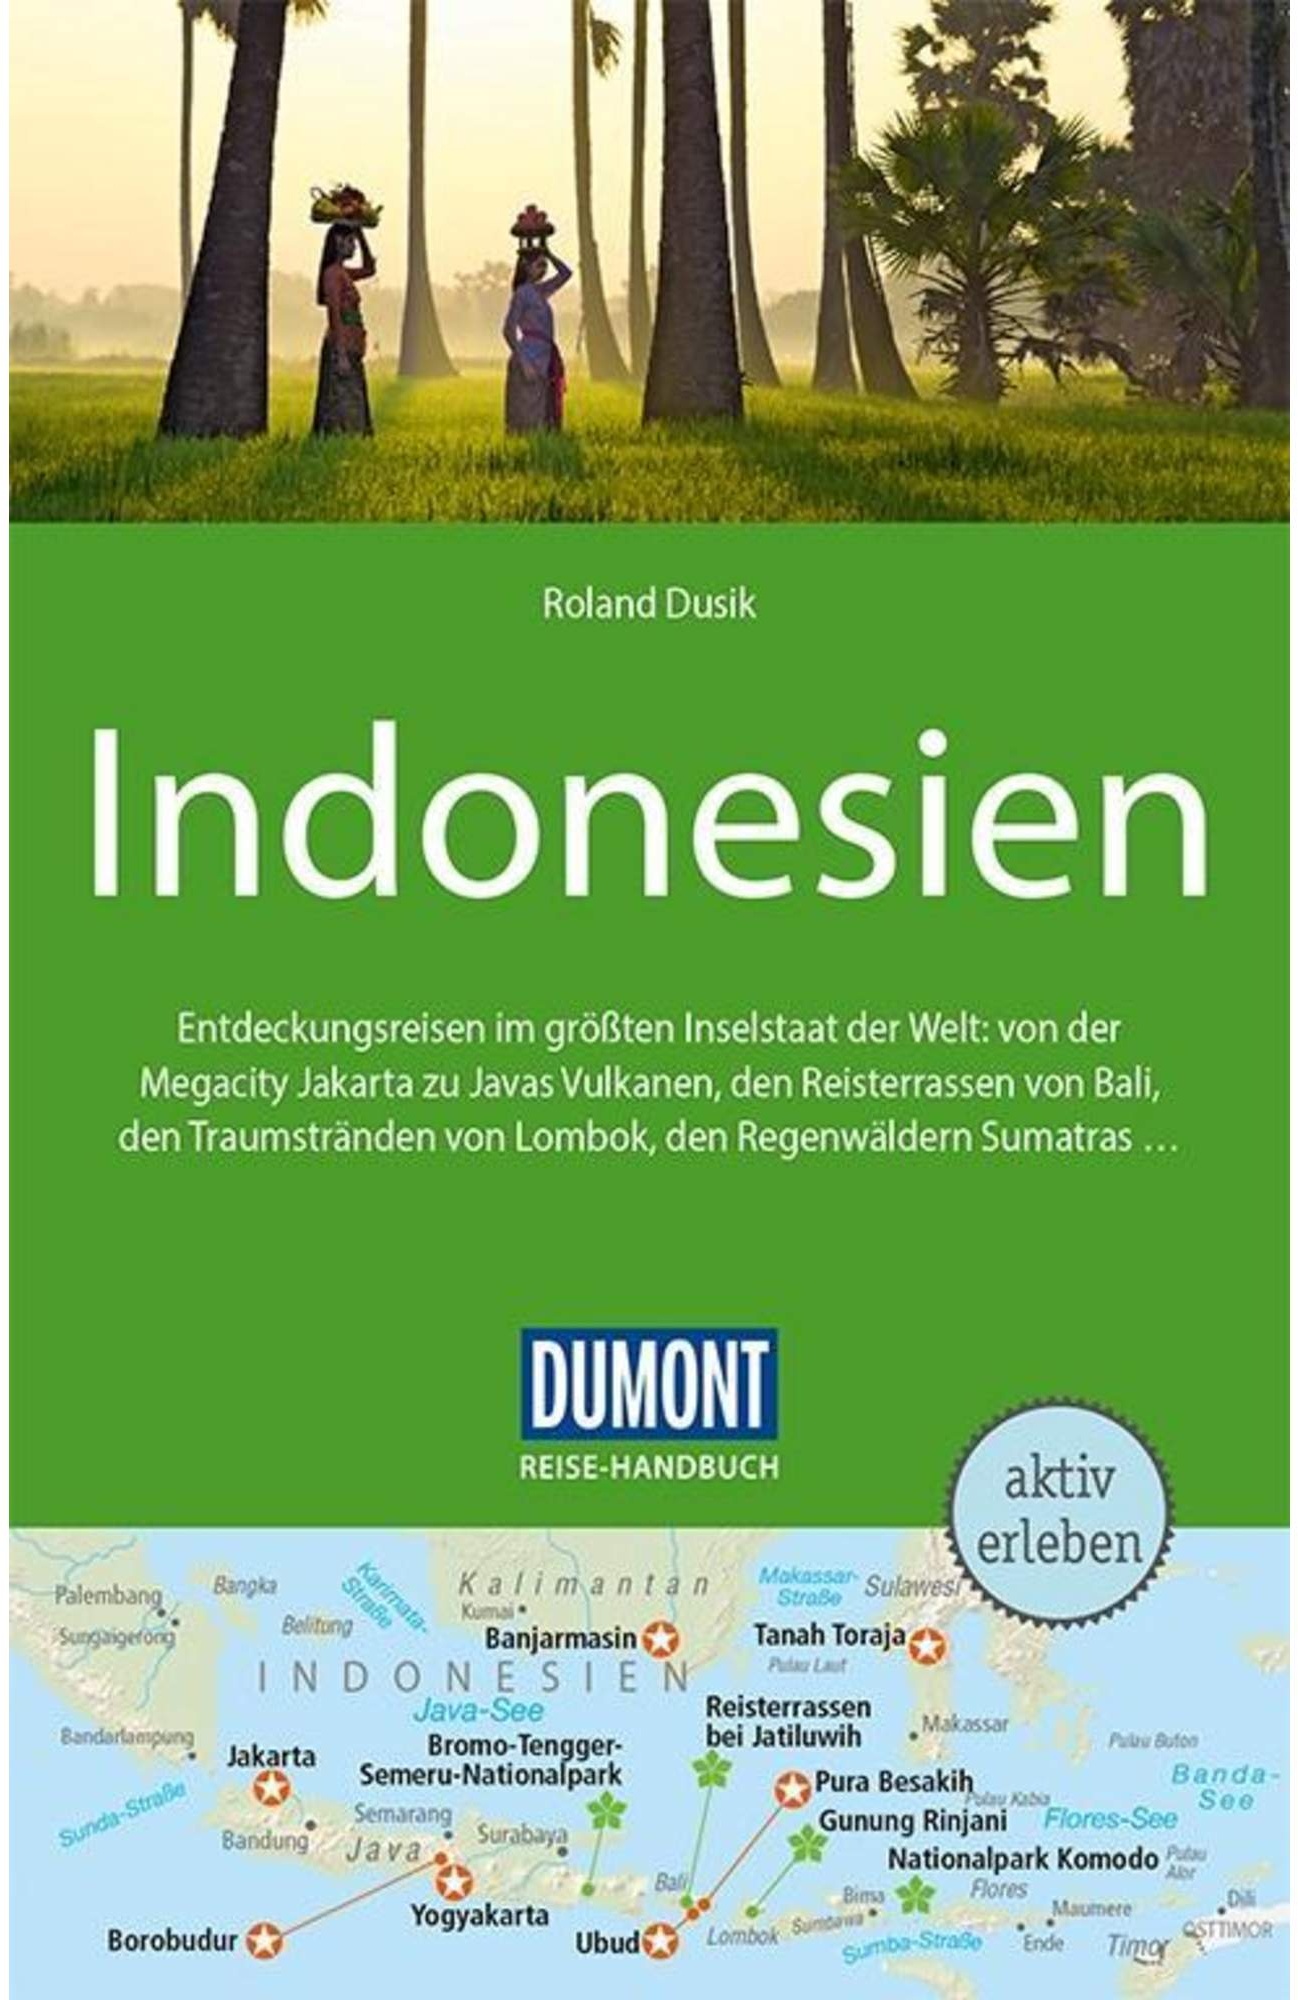 DuMont Reise-Handbuch Reiseführer Indonesien - 4. Auflage